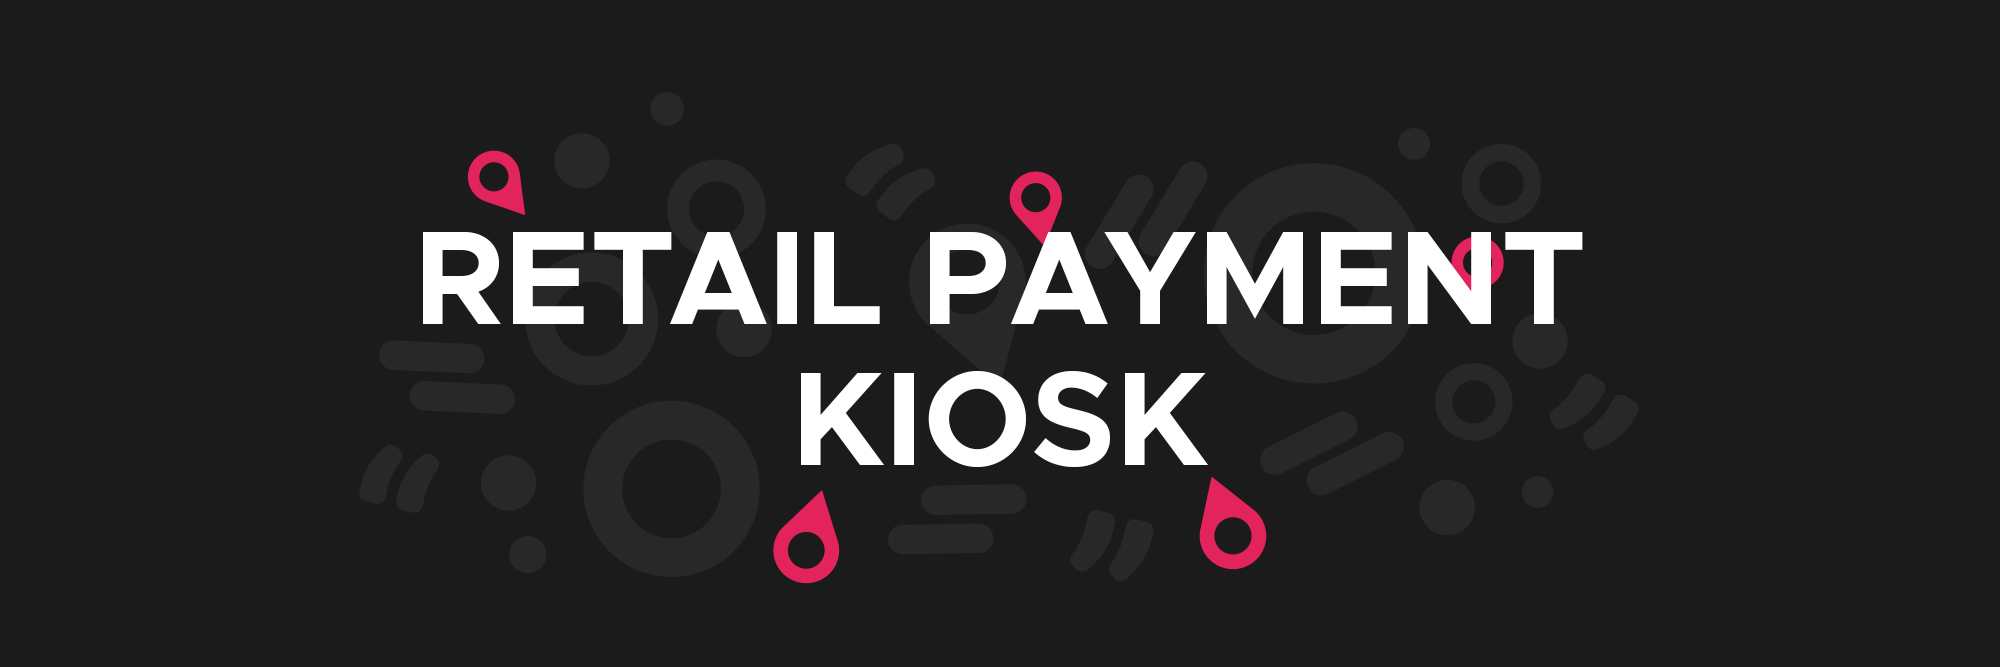 Retail Payment Kiosk